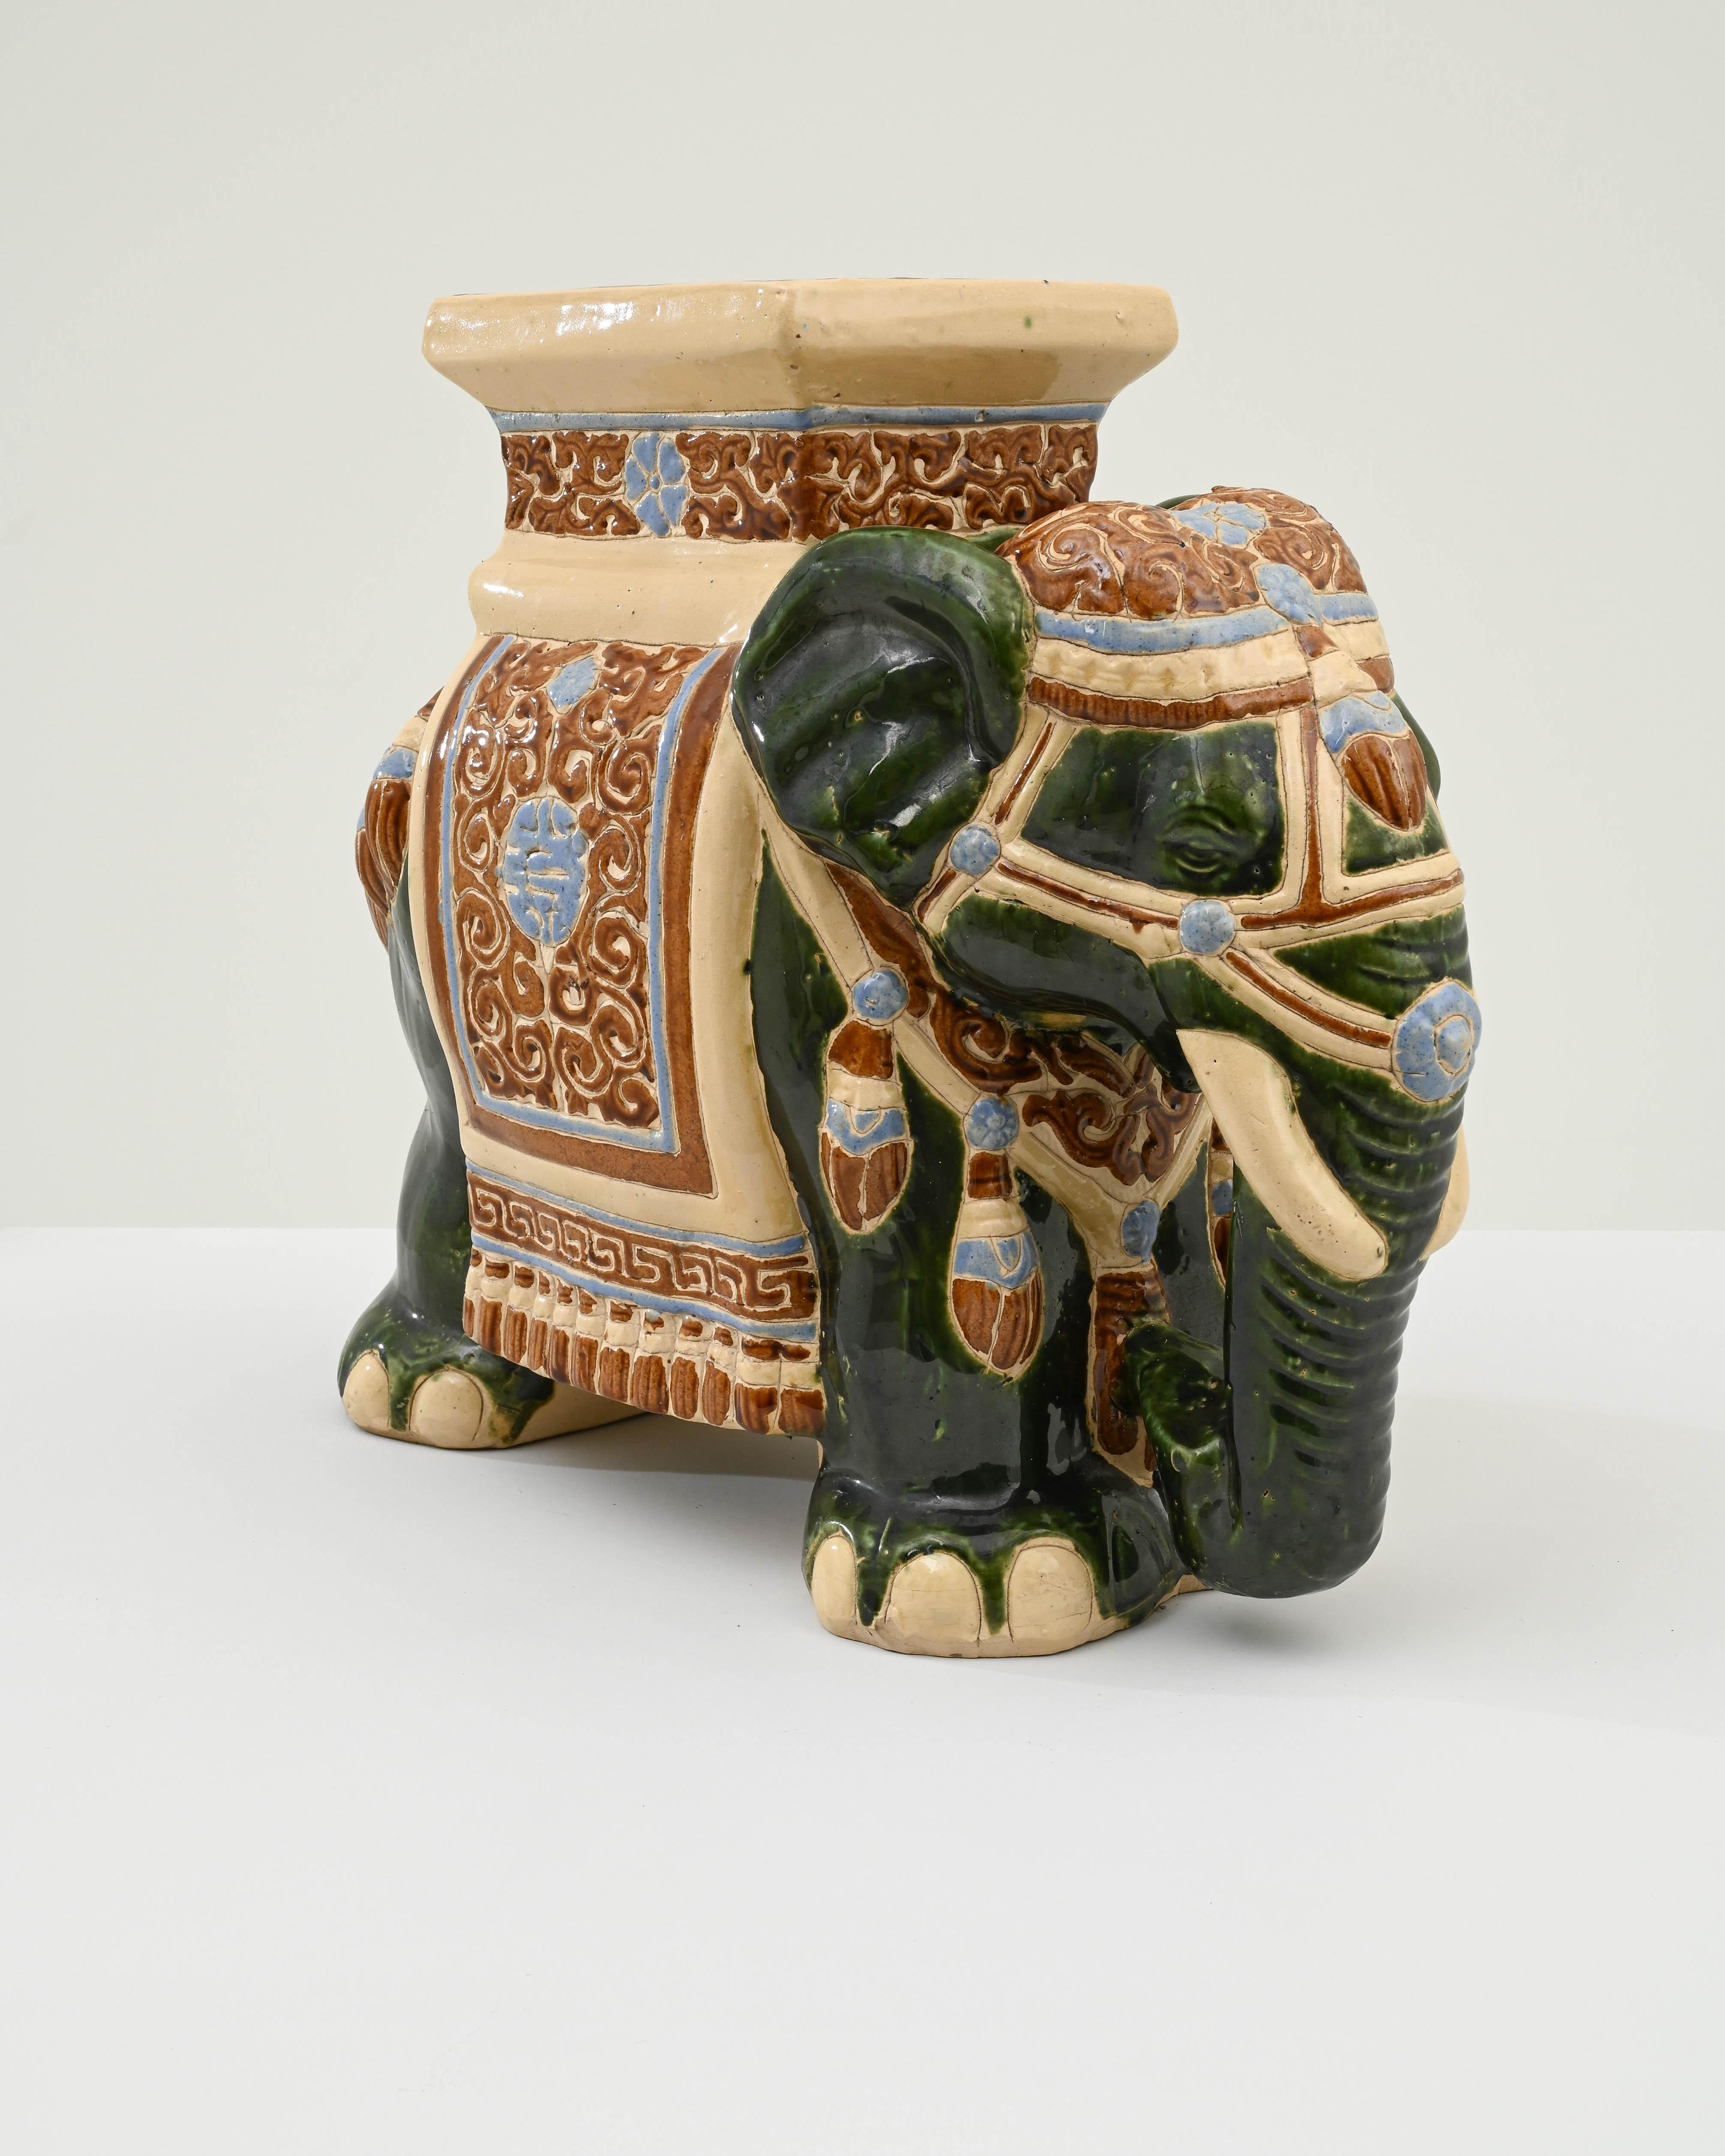 Décoration en céramique des années 1960 en France en forme d'éléphant. Un siège de selle et une couverture sont émaillés de bleu pâle et d'ocre, la peau de l'éléphant est peinte en céladon foncé et bordée des lignes du corps en argile de couleur